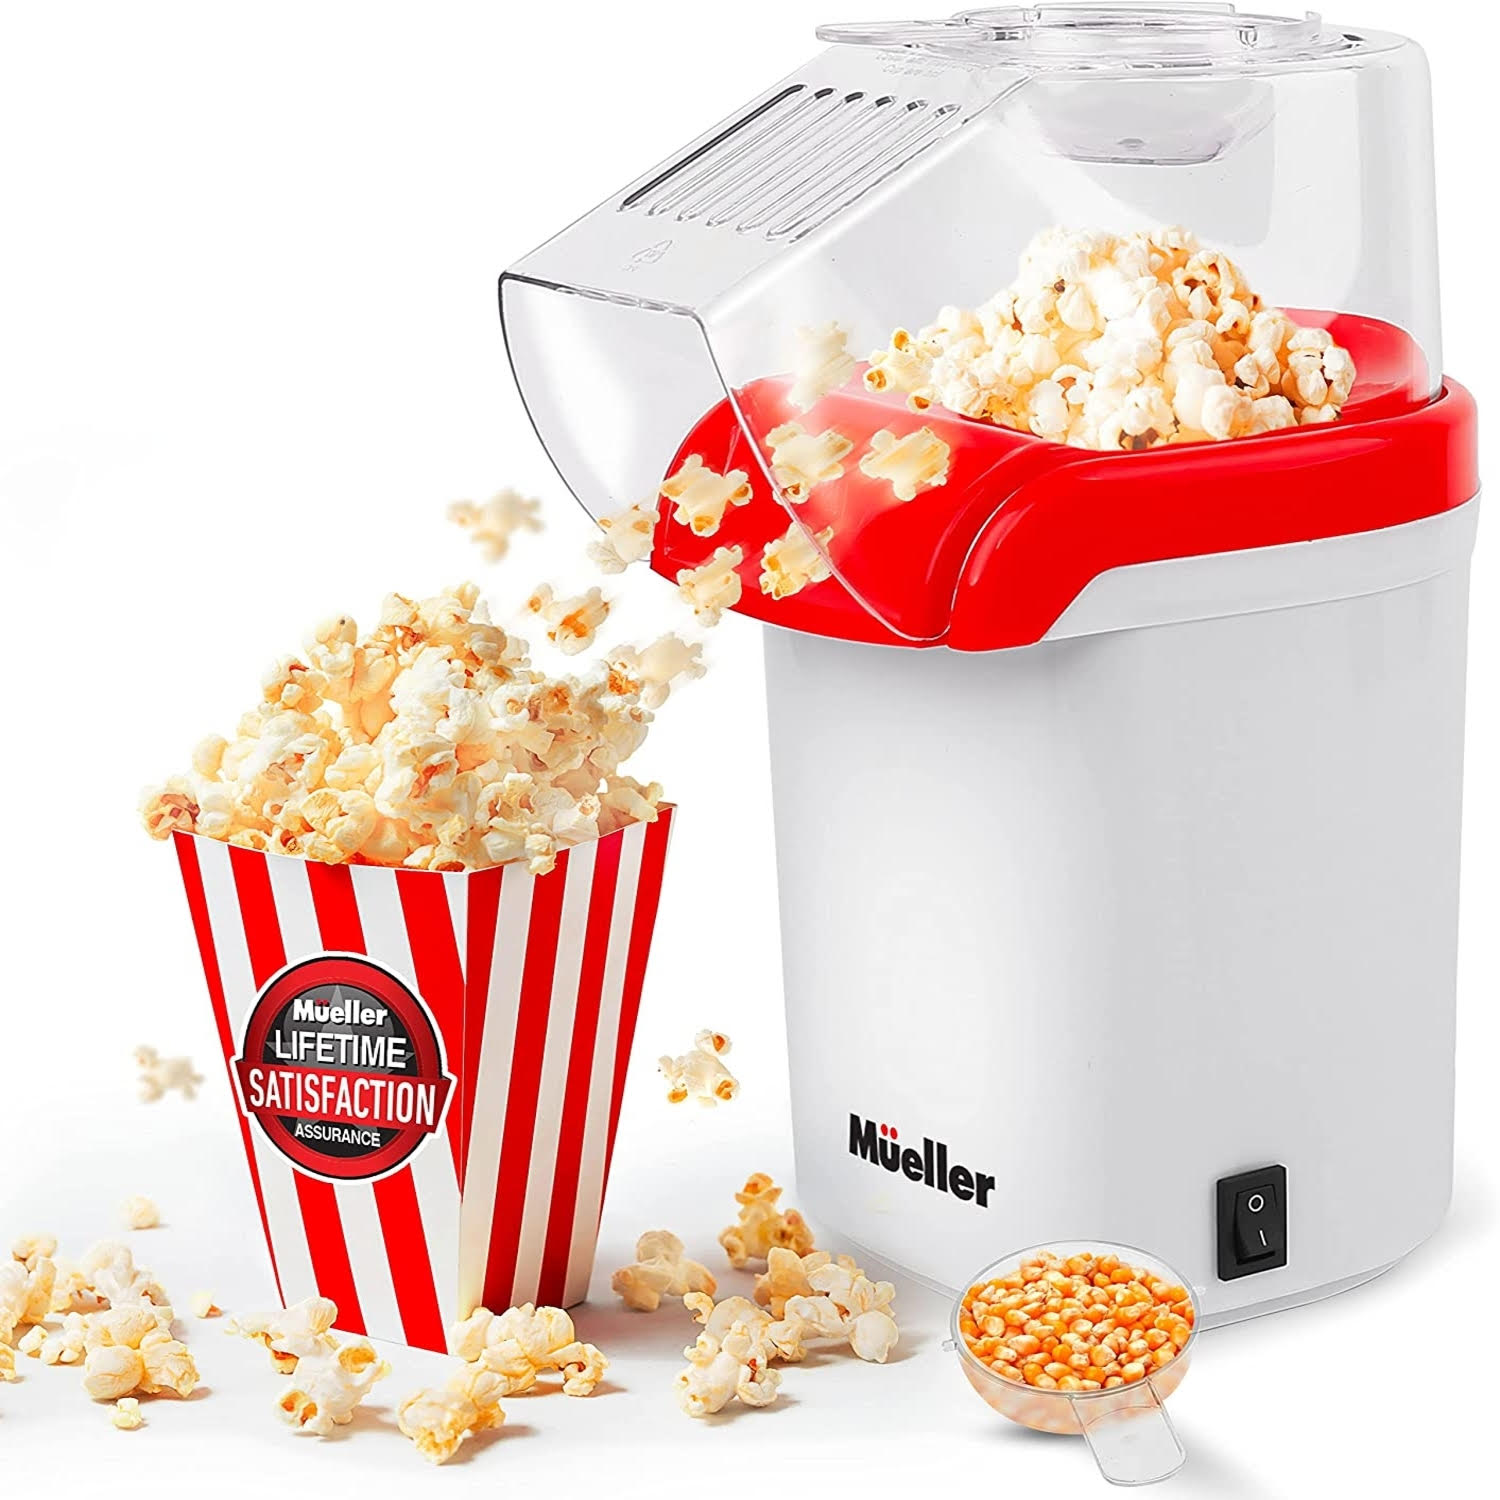 https://muellerhome.us/wp-content/uploads/2021/08/muellerhome_UltraPro-Hot-Air-Popcorn-Popper.jpg